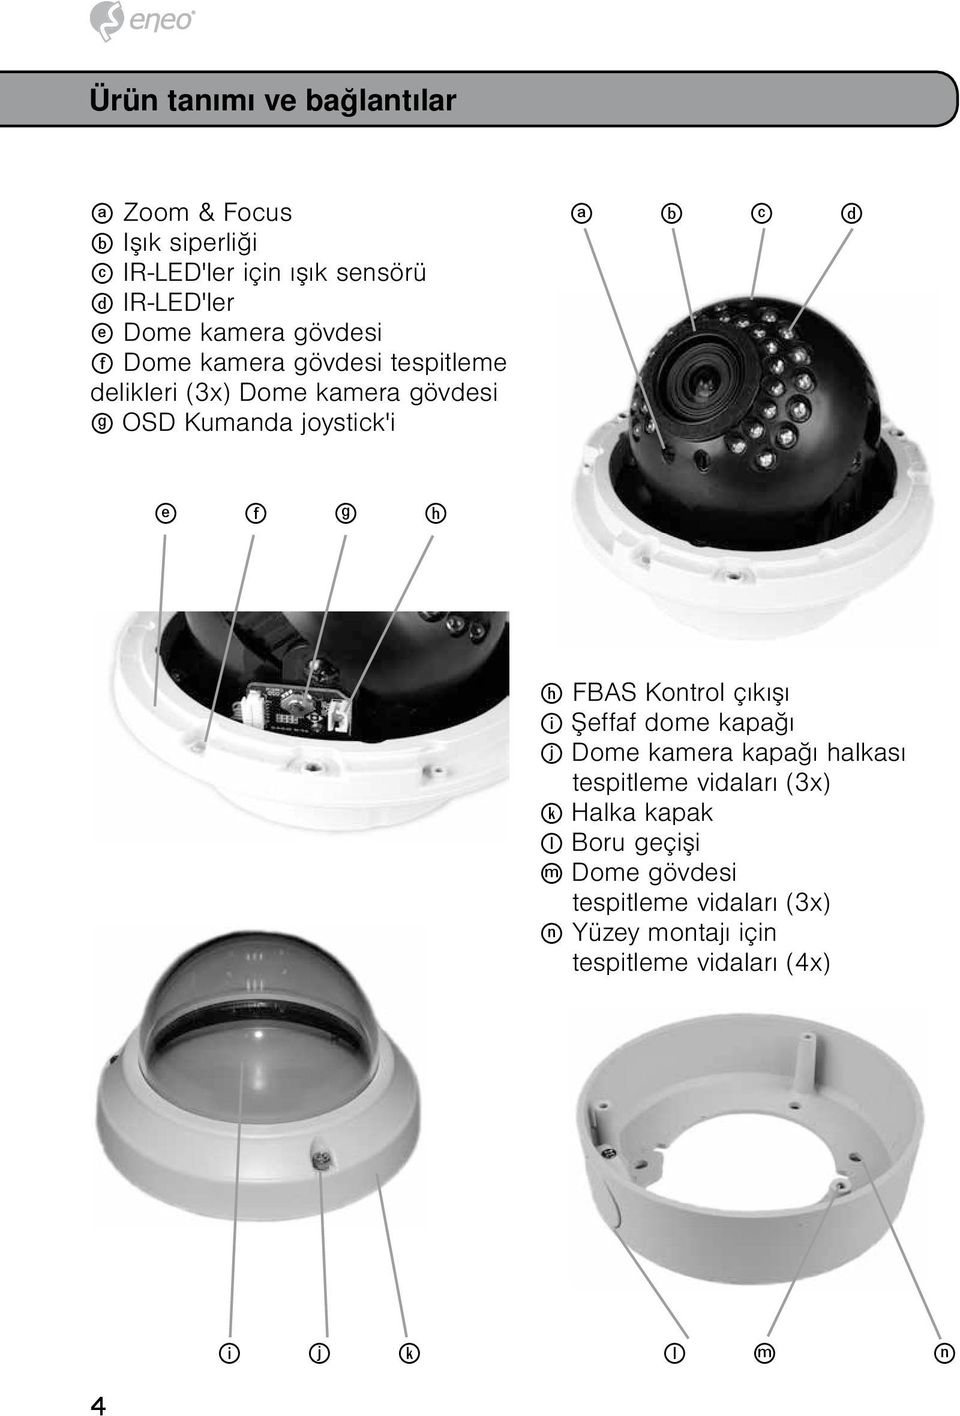 d e f g h h FBAS Kontrol çıkışı i Şeffaf dome kapağı j Dome kamera kapağı halkası tespitleme vidaları (3x) k Halka